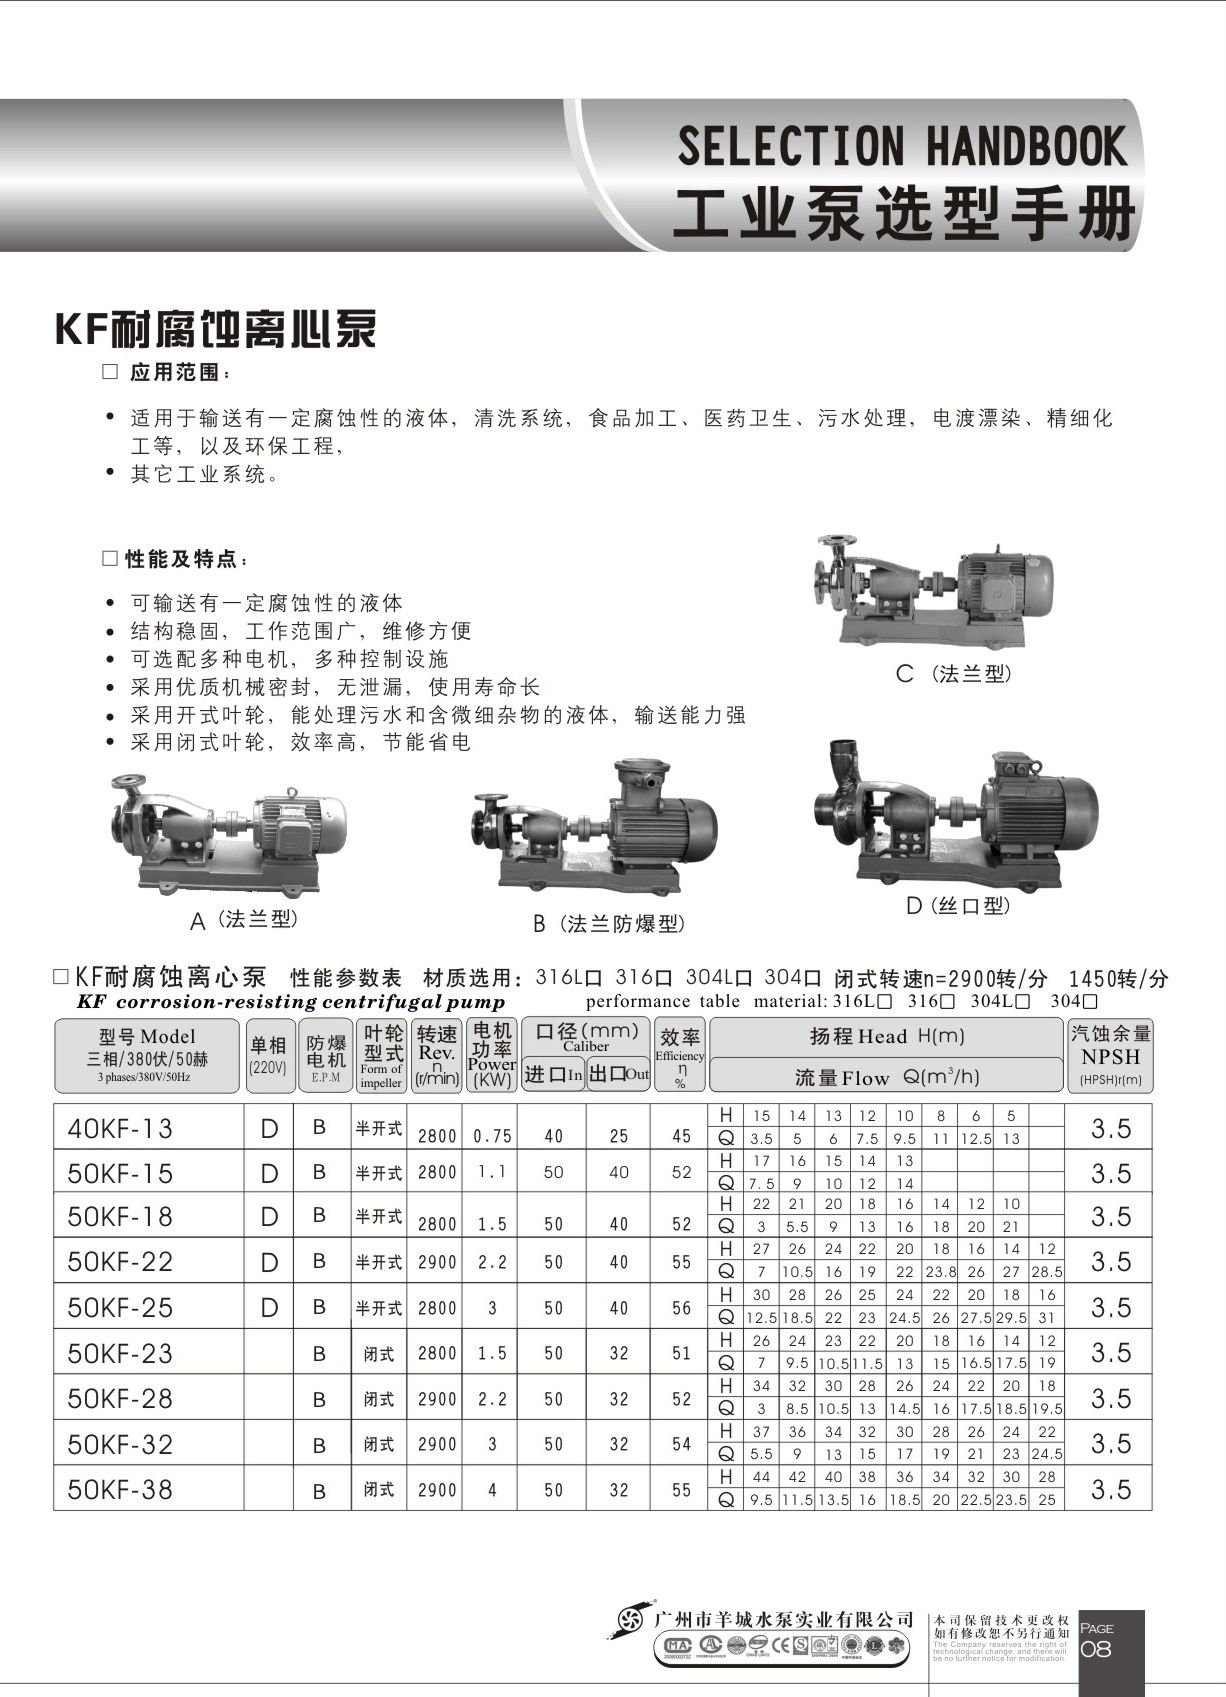 羊城水泵|50KF-15|耐腐蚀离心泵|羊城泵业|广州羊城水泵厂